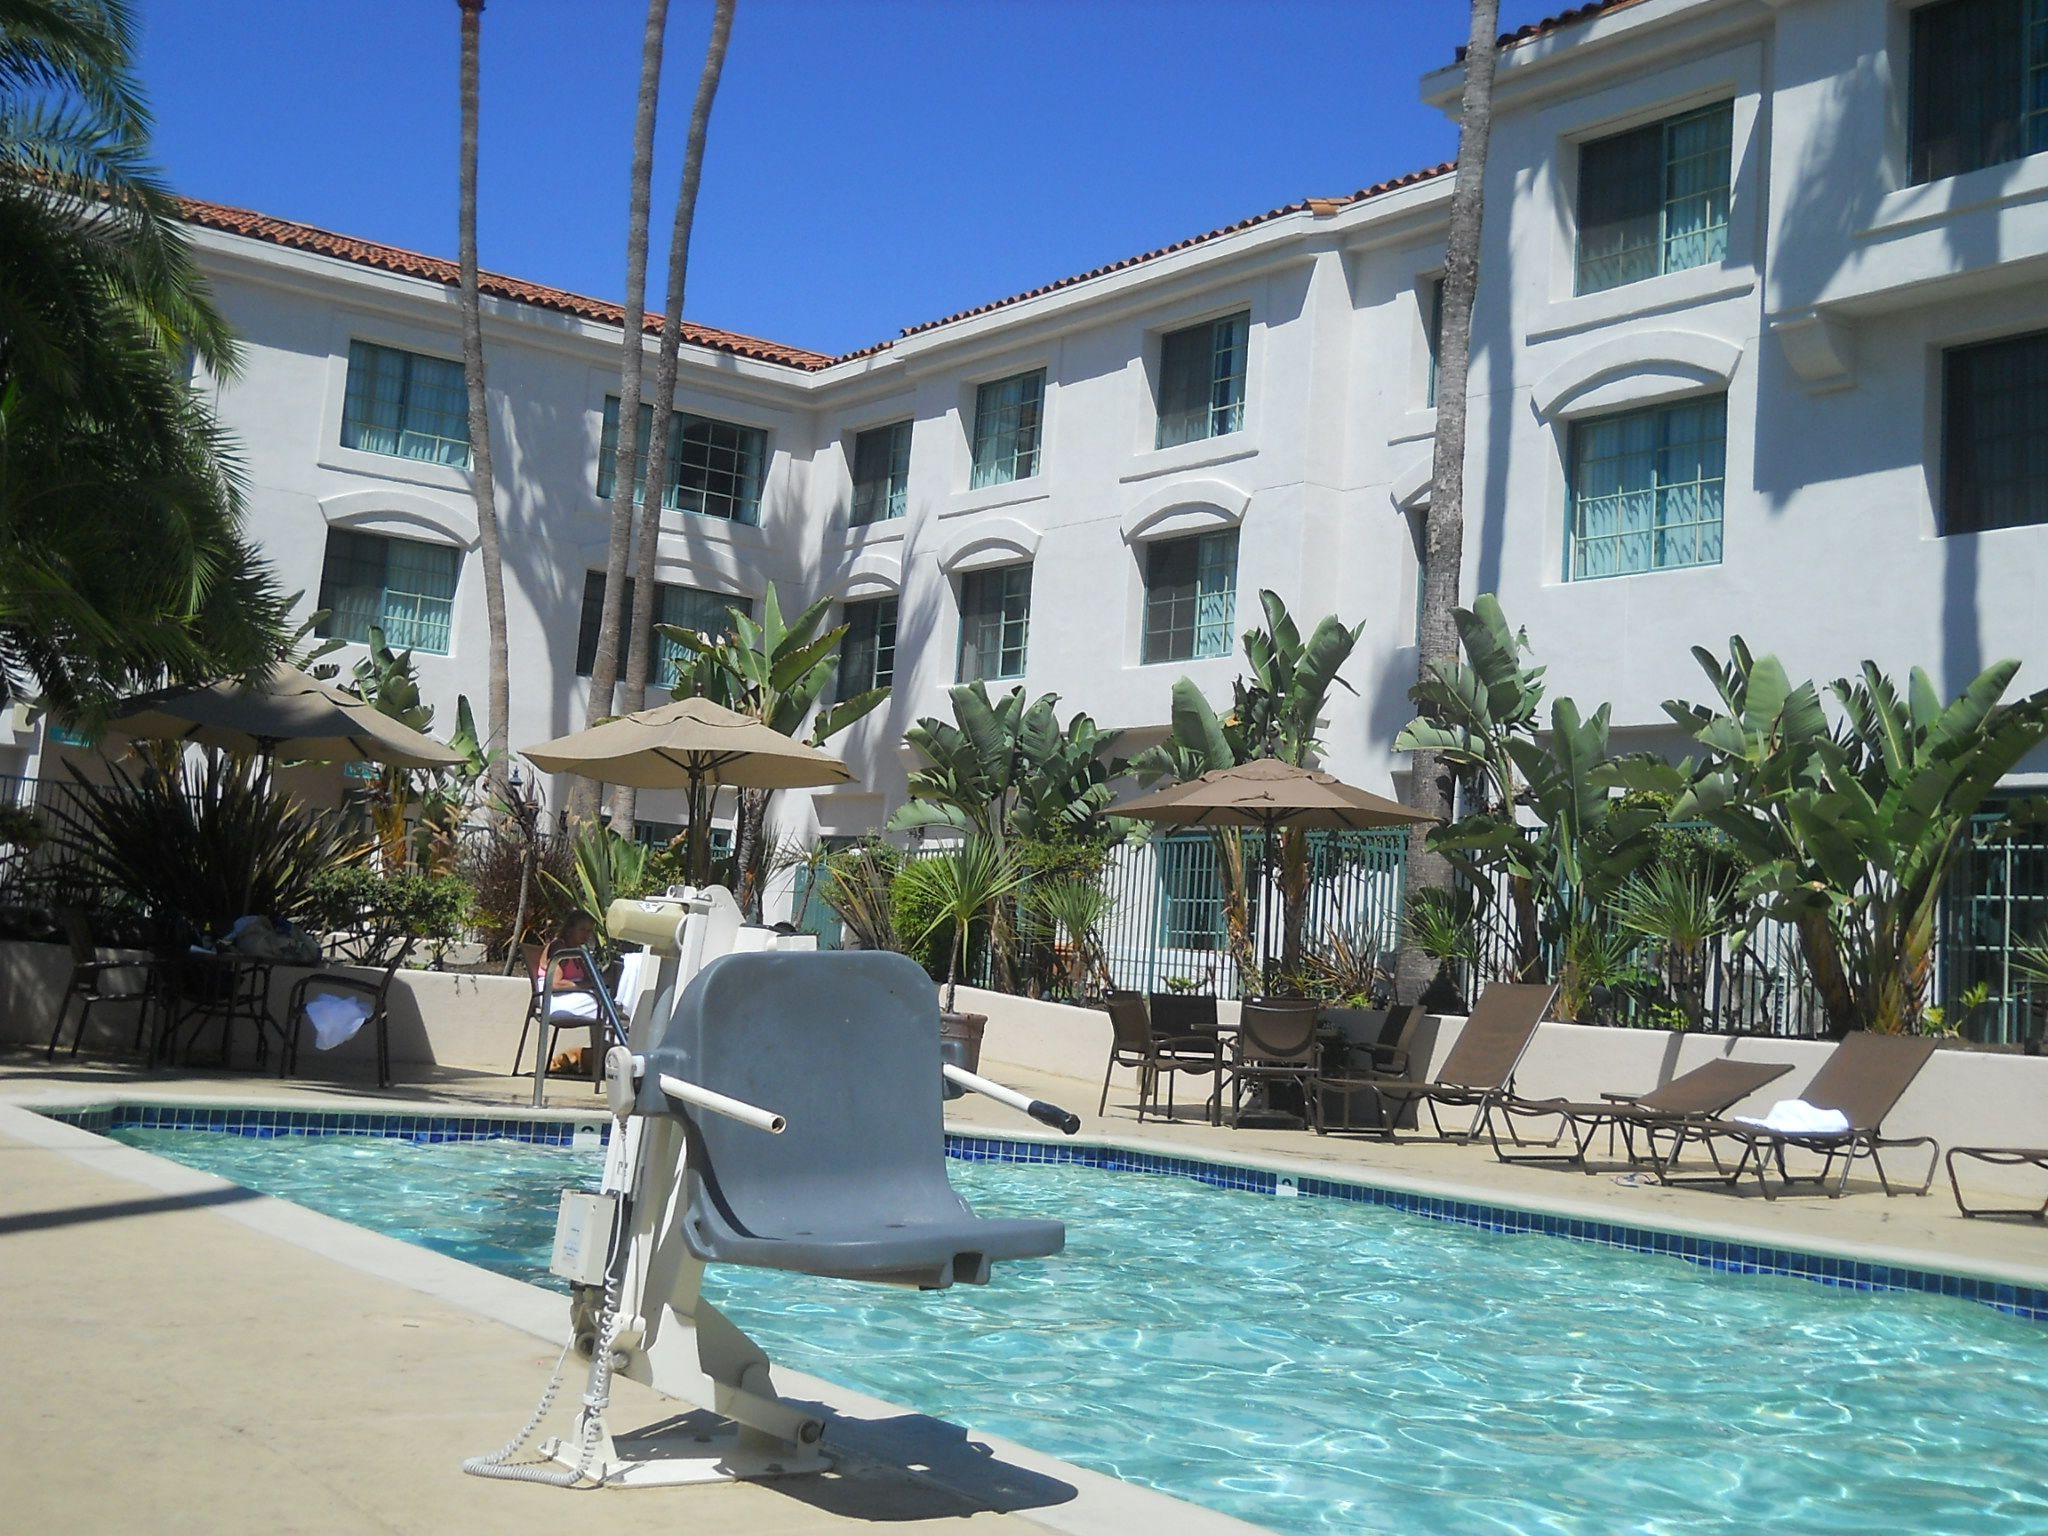 ヒルトン サンペドロ ポート オフ ロサンゼルス ホテルのプール ラスベガス ロサンゼルスの旅 楽天ブログ